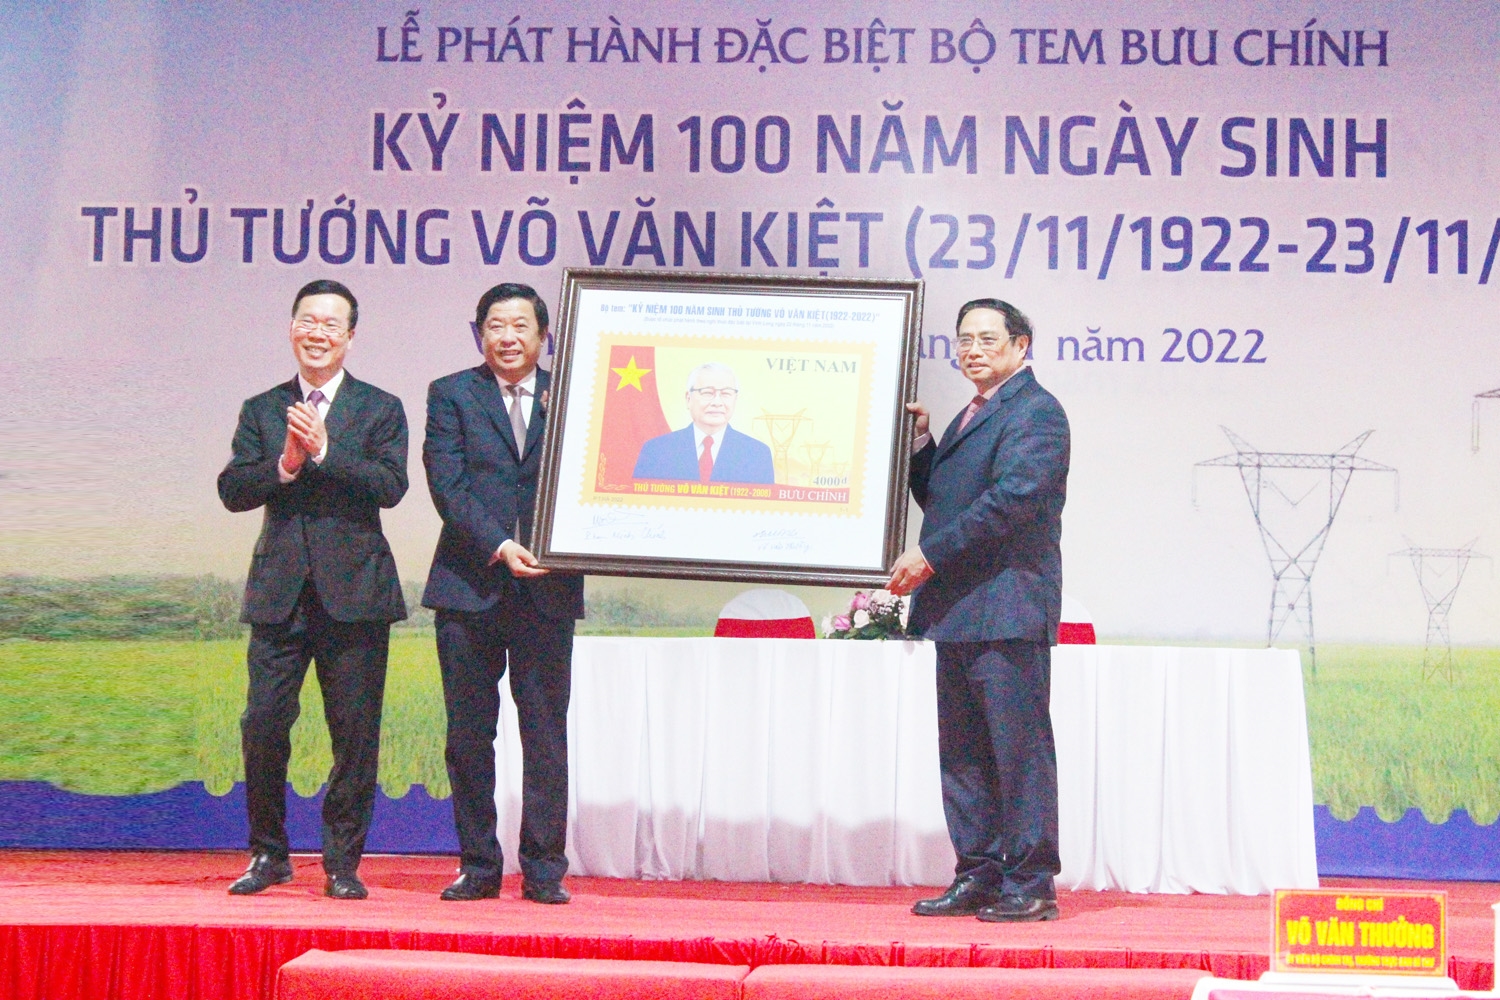 Thủ tướng Phạm Minh Chính tham dự phát hành và giới thiệu bộ tem “Kỷ niệm 100 năm sinh Thủ tướng Võ Văn Kiệt”